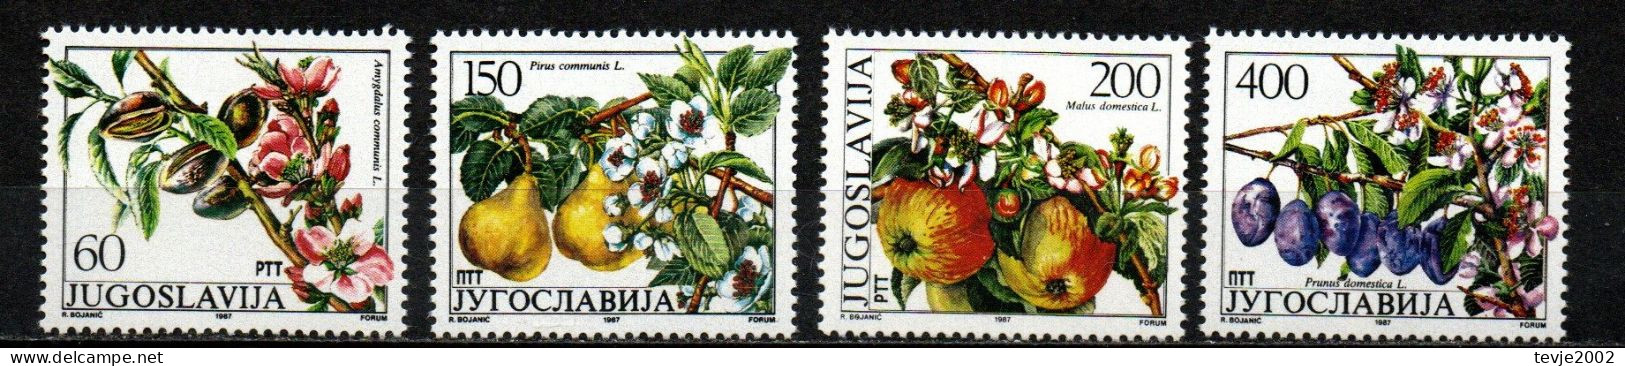 Jugoslawien 1987 - Mi.Nr. 2221 - 2224 - Postfrisch MNH - Früchte Fruits Obst - Obst & Früchte